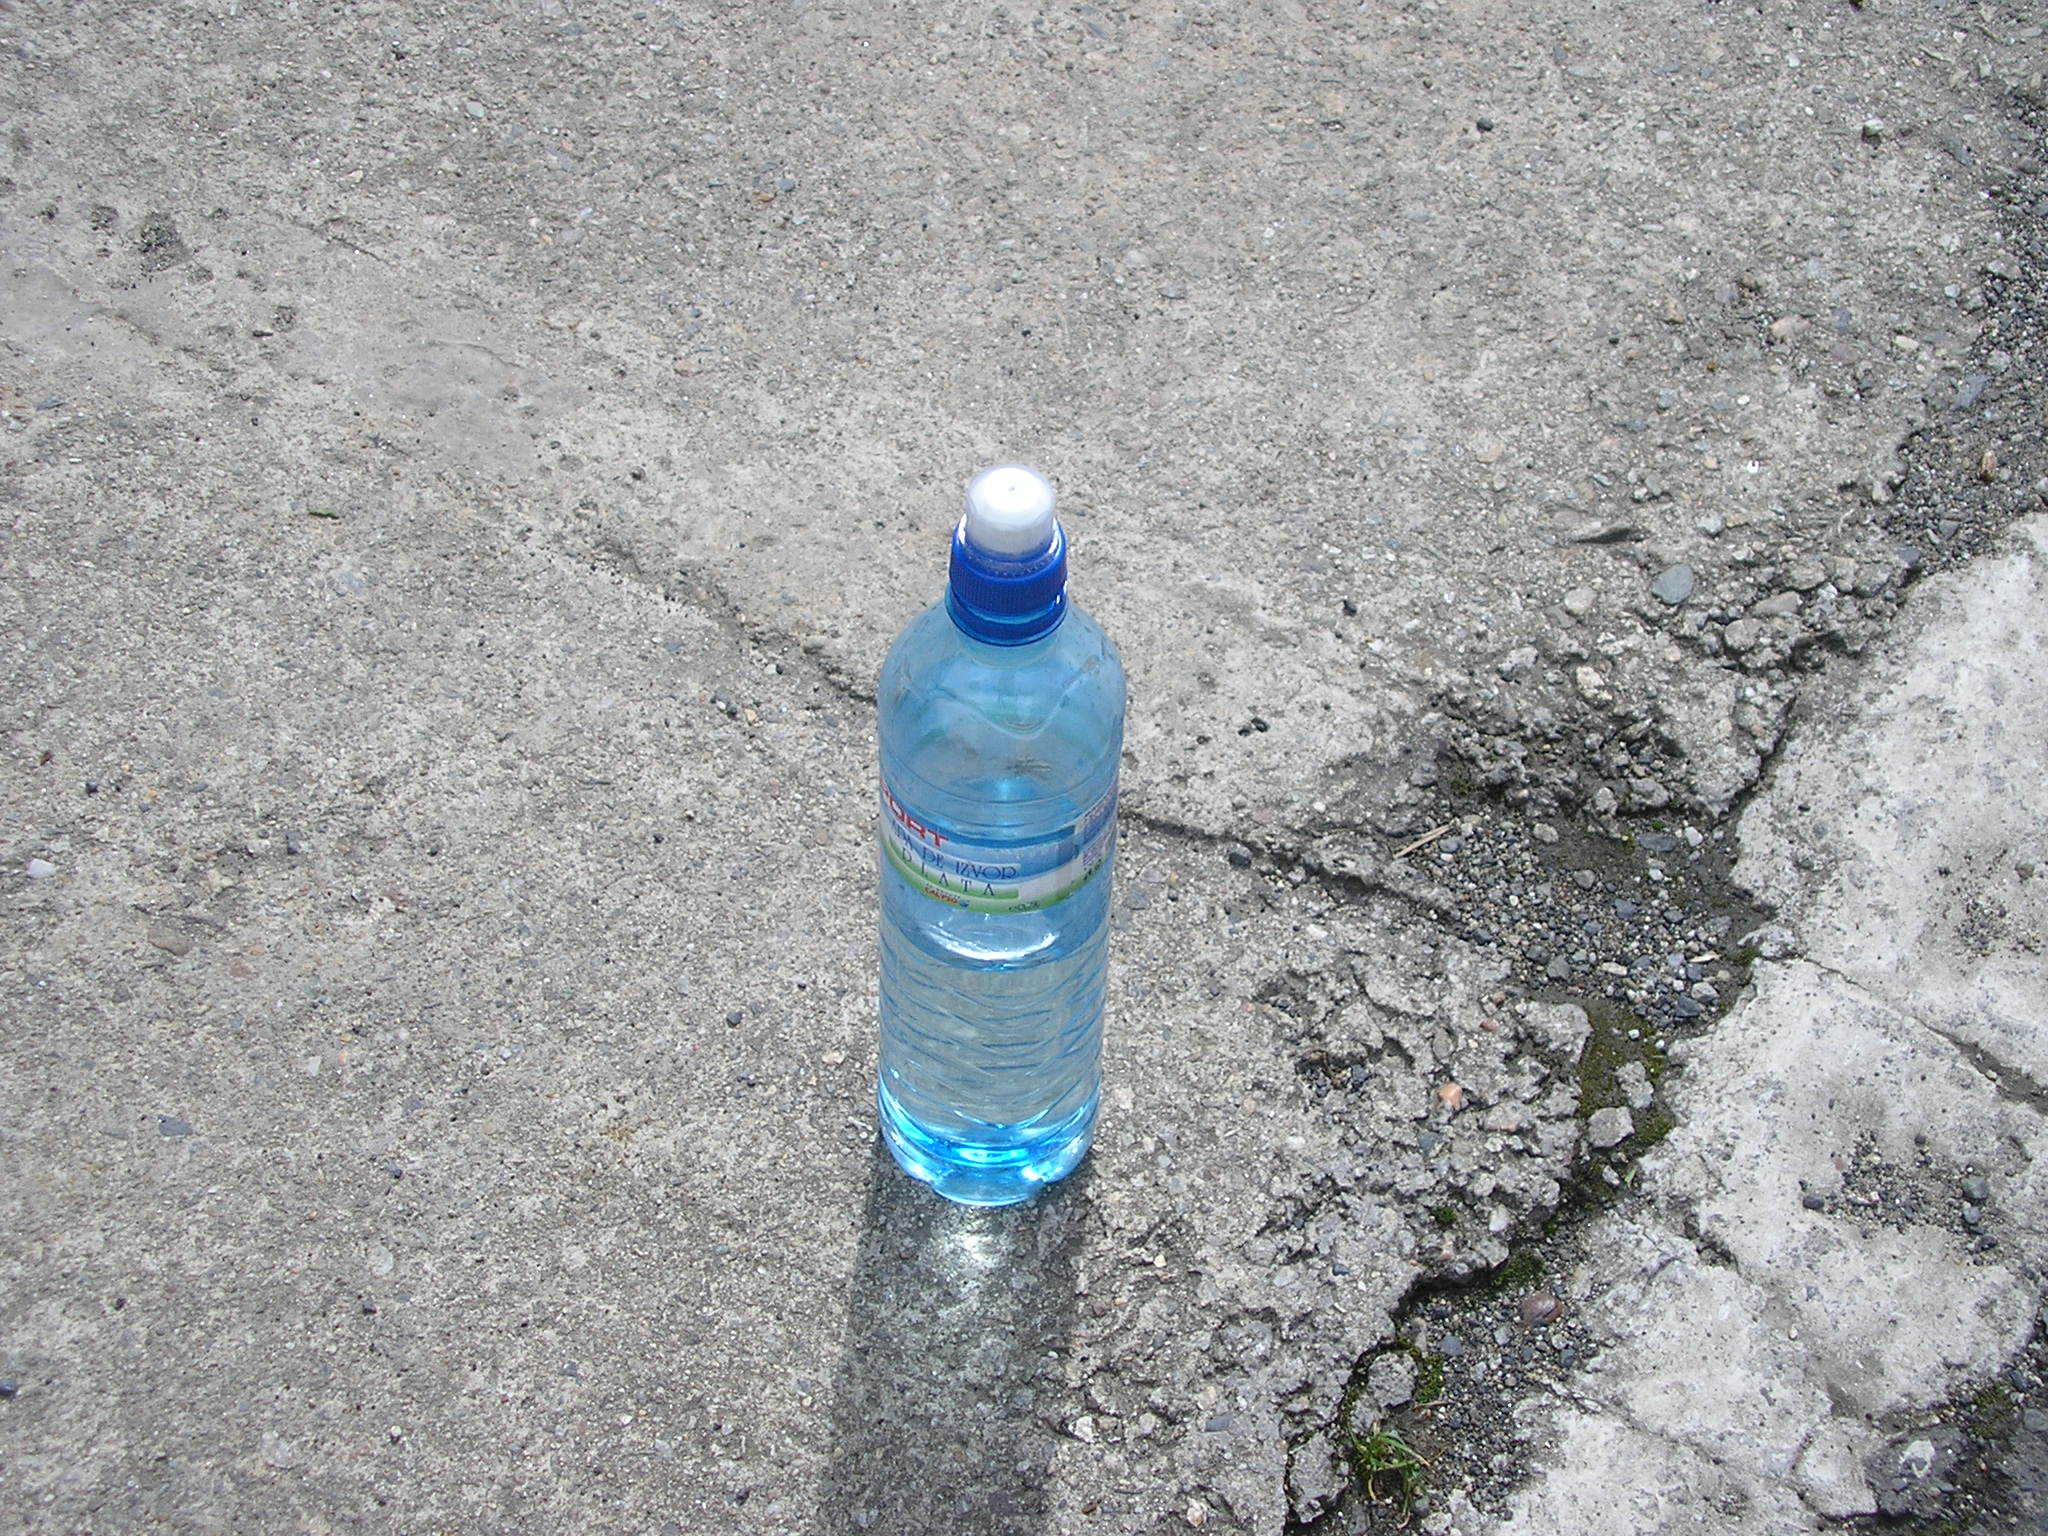 The Empty Water Bottle